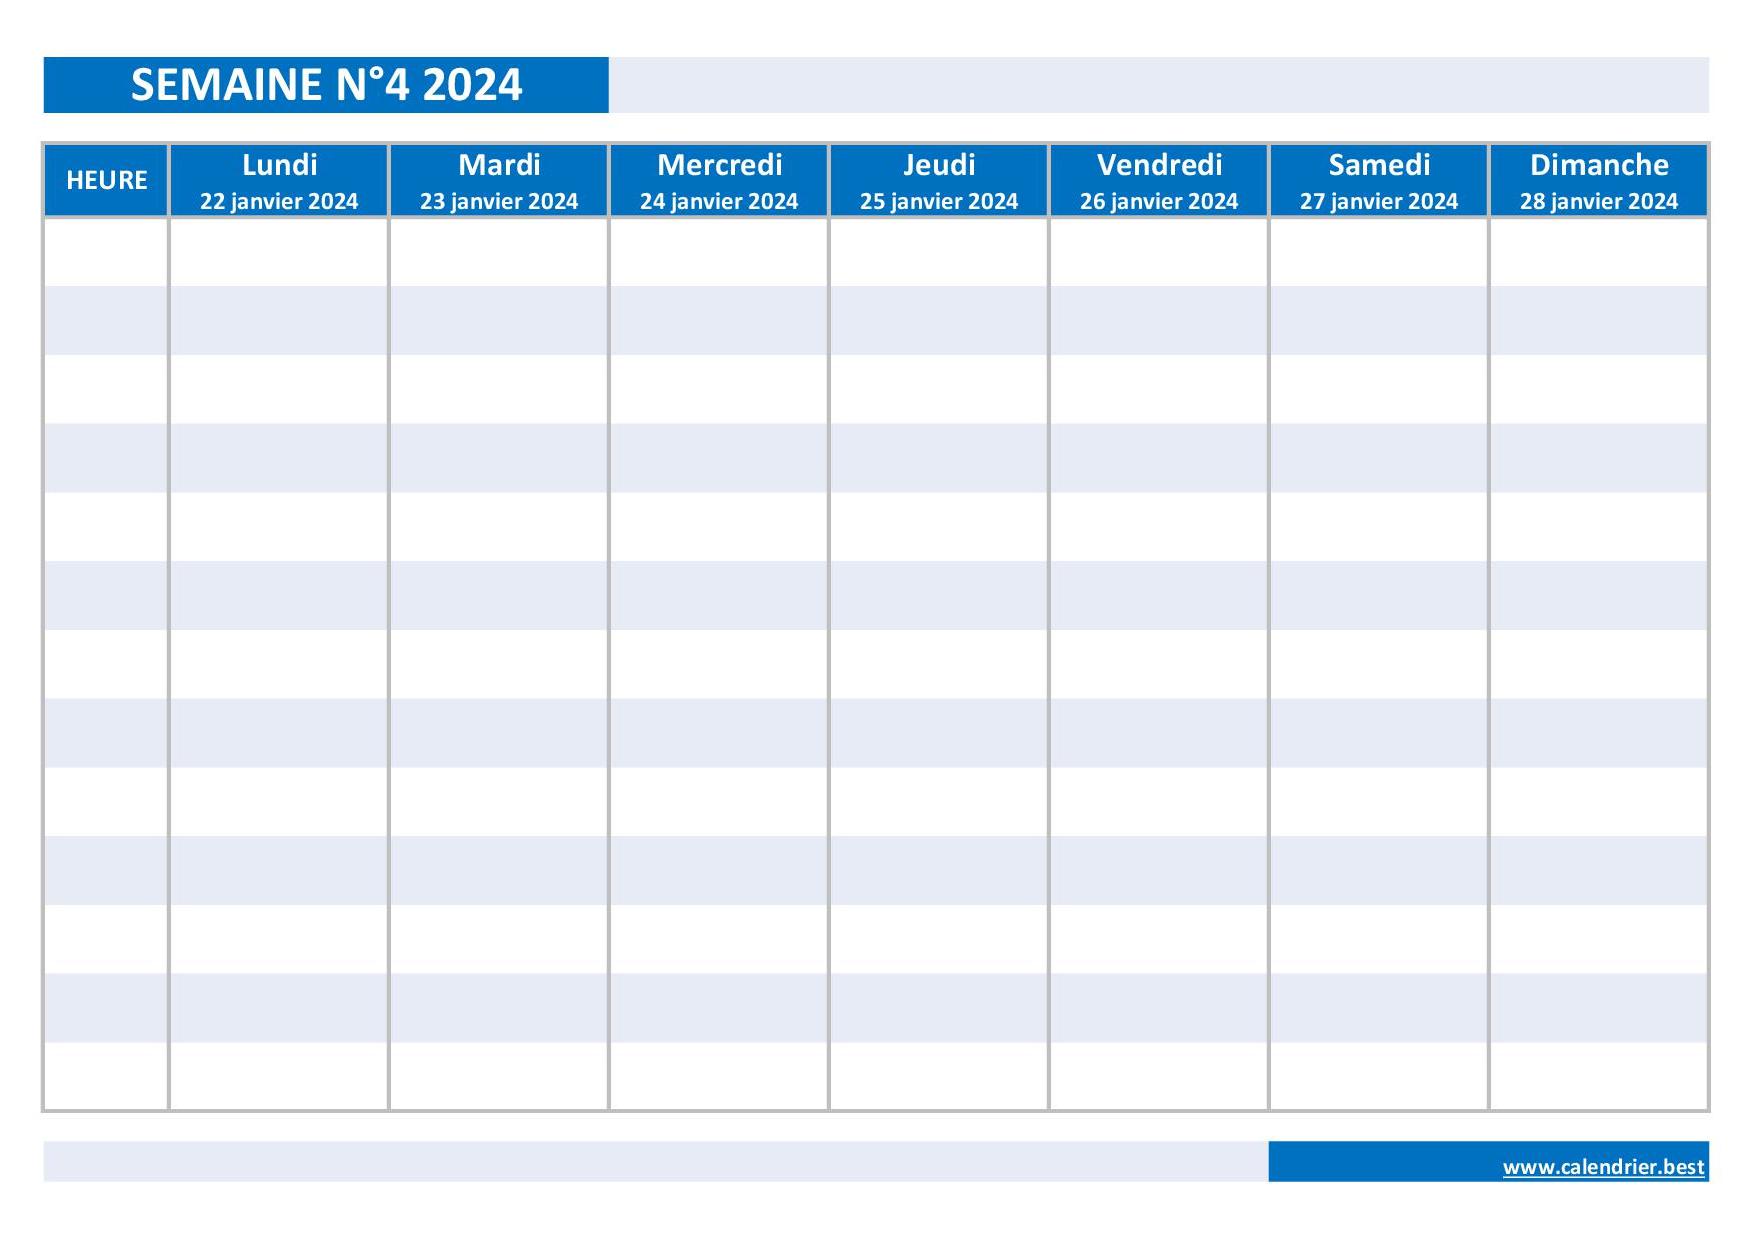 Semaine 4 2024 : dates, calendrier et planning hebdomadaire à imprimer